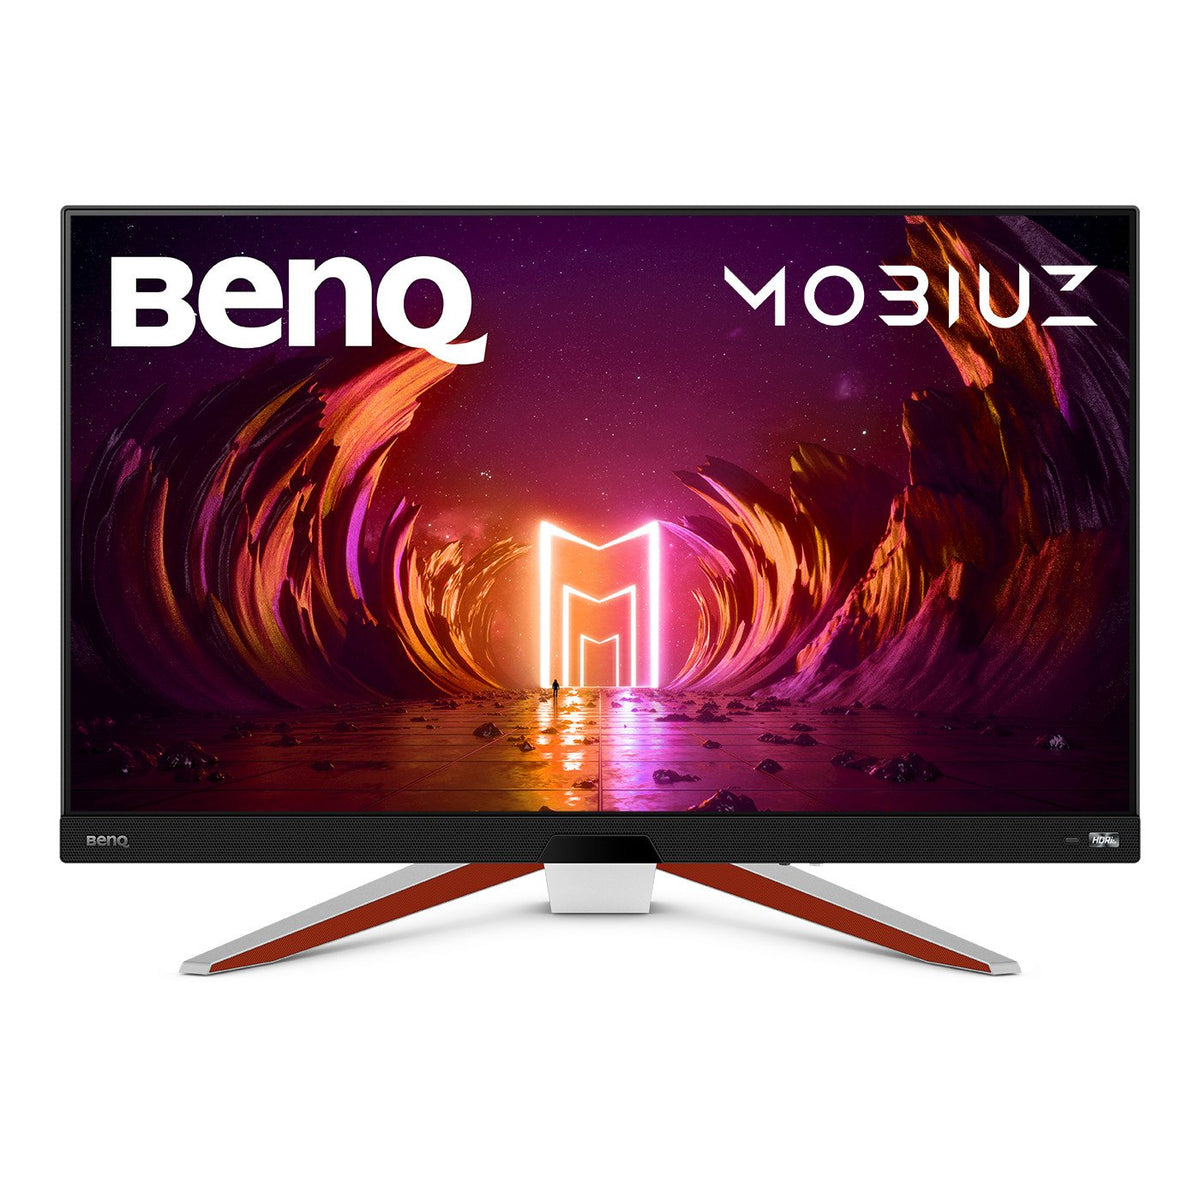 BenQ Mobiuz EX2710U - Monitor LCD - 27" - 3840 x 2160 4K @ 144 Hz - IPS - 600 cd/m² - 1000:1 - DisplayHDR 600 - 1 ms - 2xHDMI, DisplayPort - altavoces con subwoofer